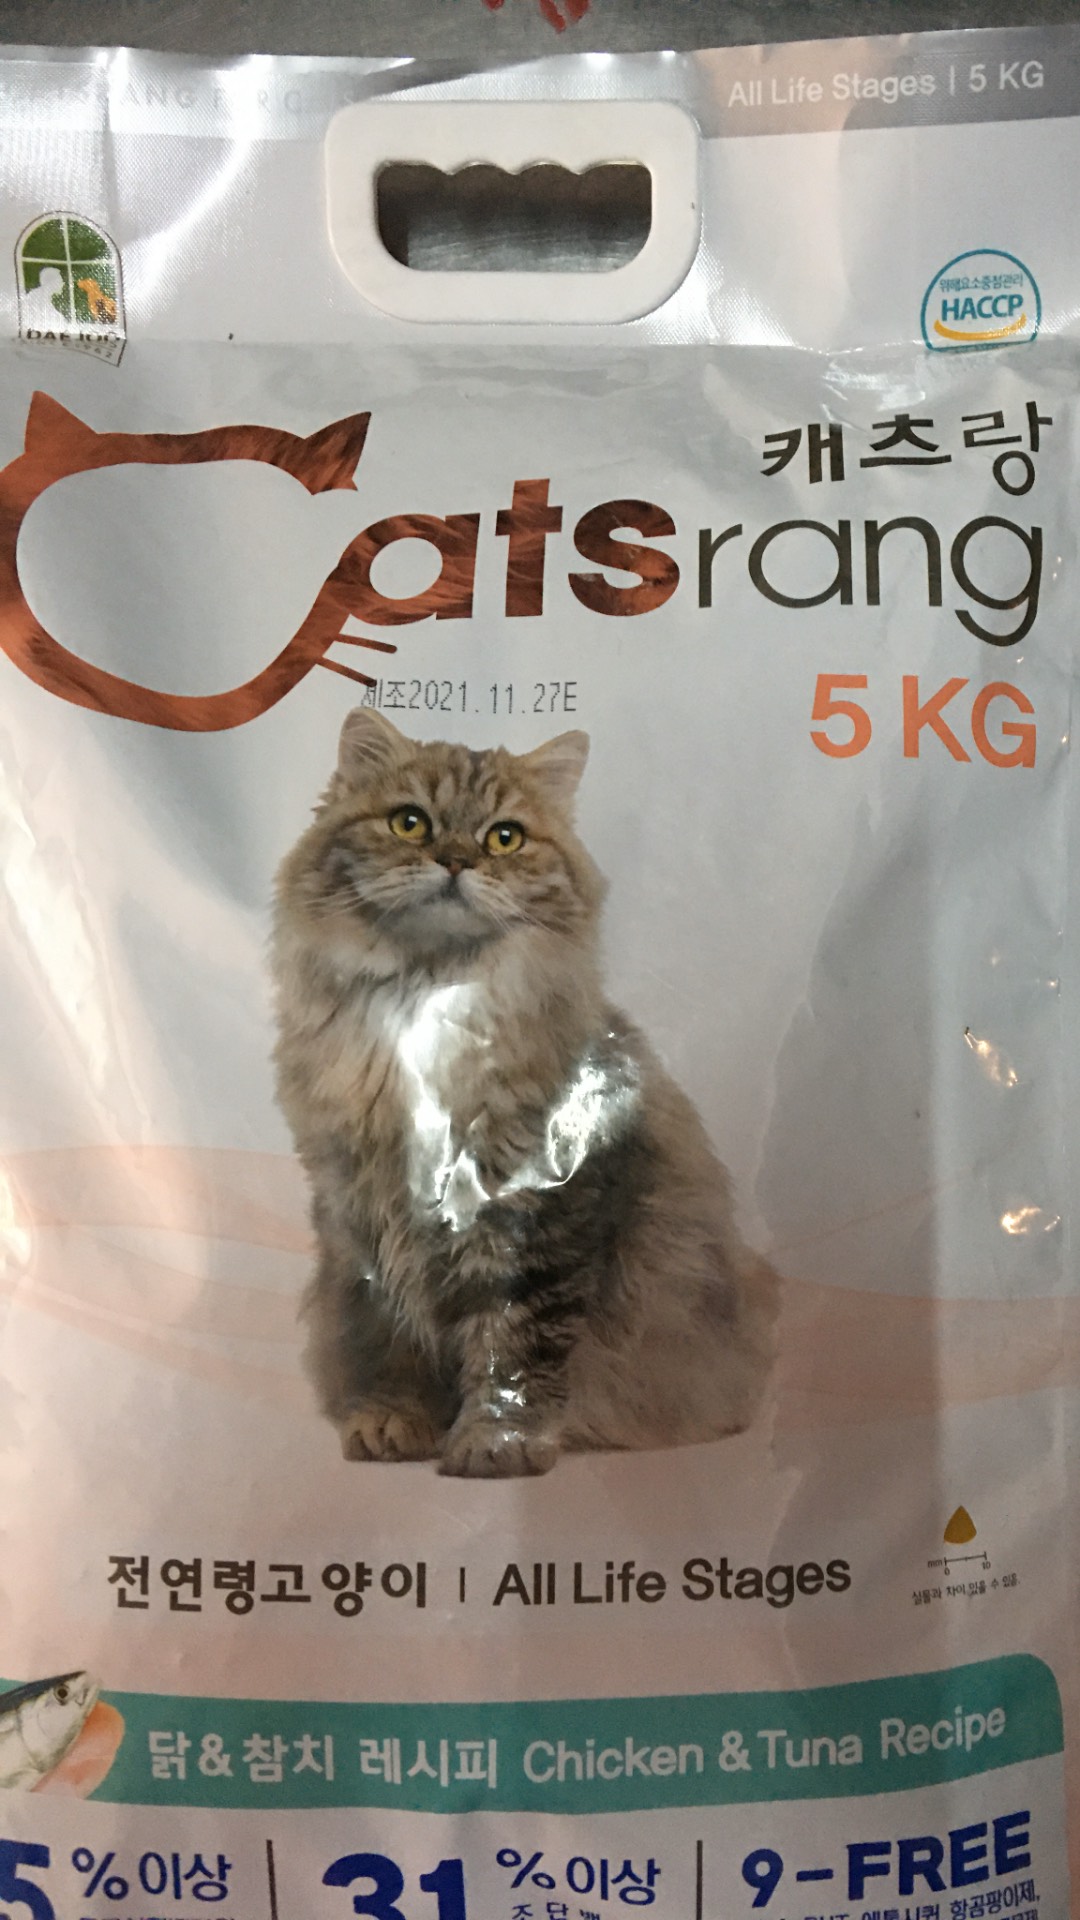 Thức ăn hạt Catsrang cho mèo túi 5kg